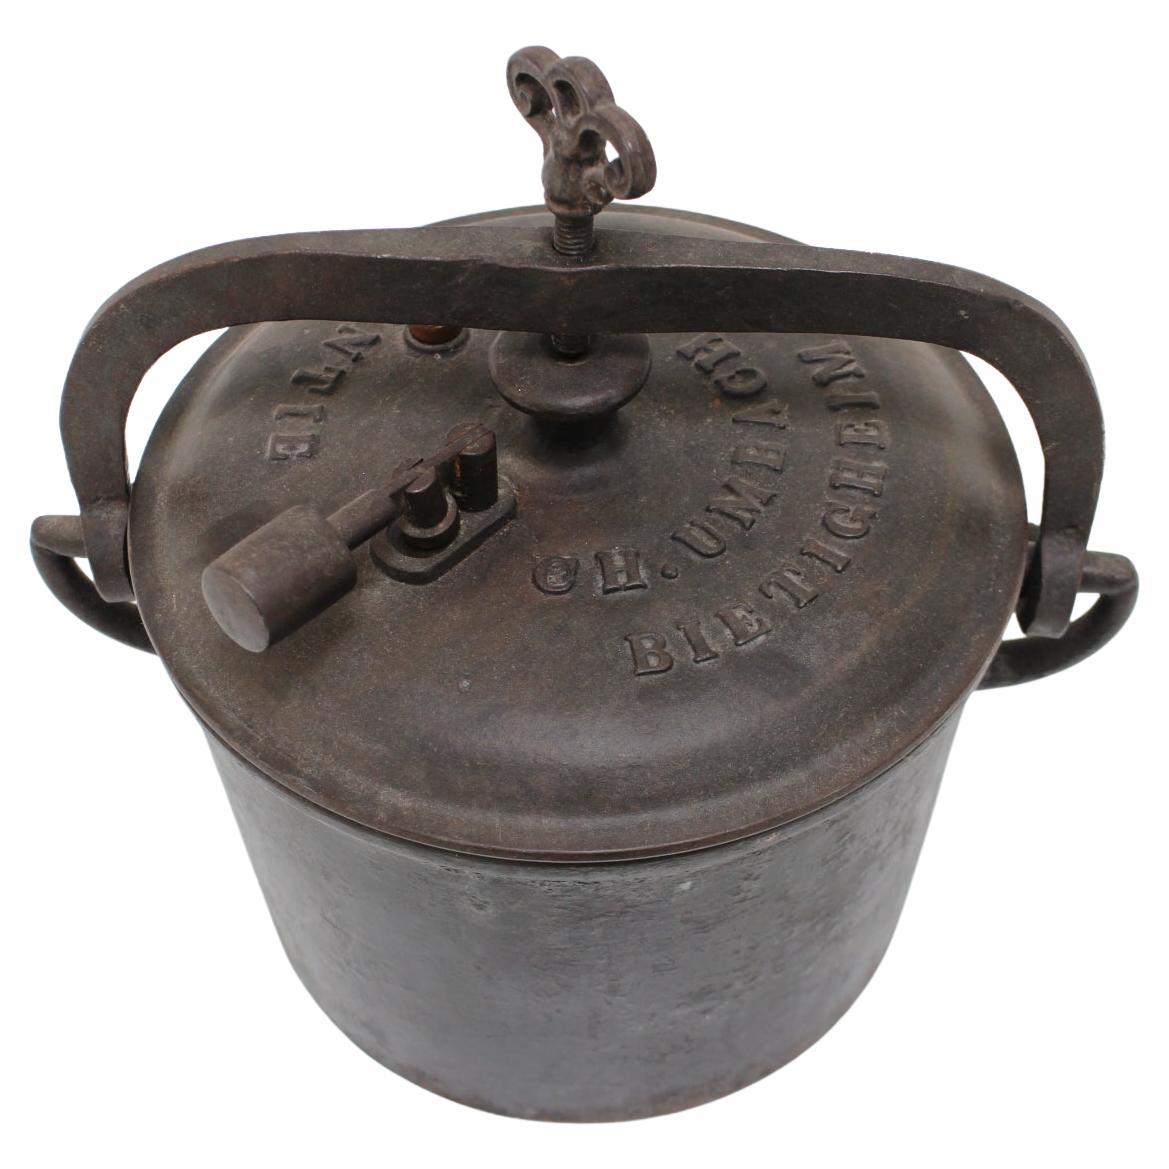 Pressure Cast Iron Pot Ch. Umbach Bietigheim, 1910s